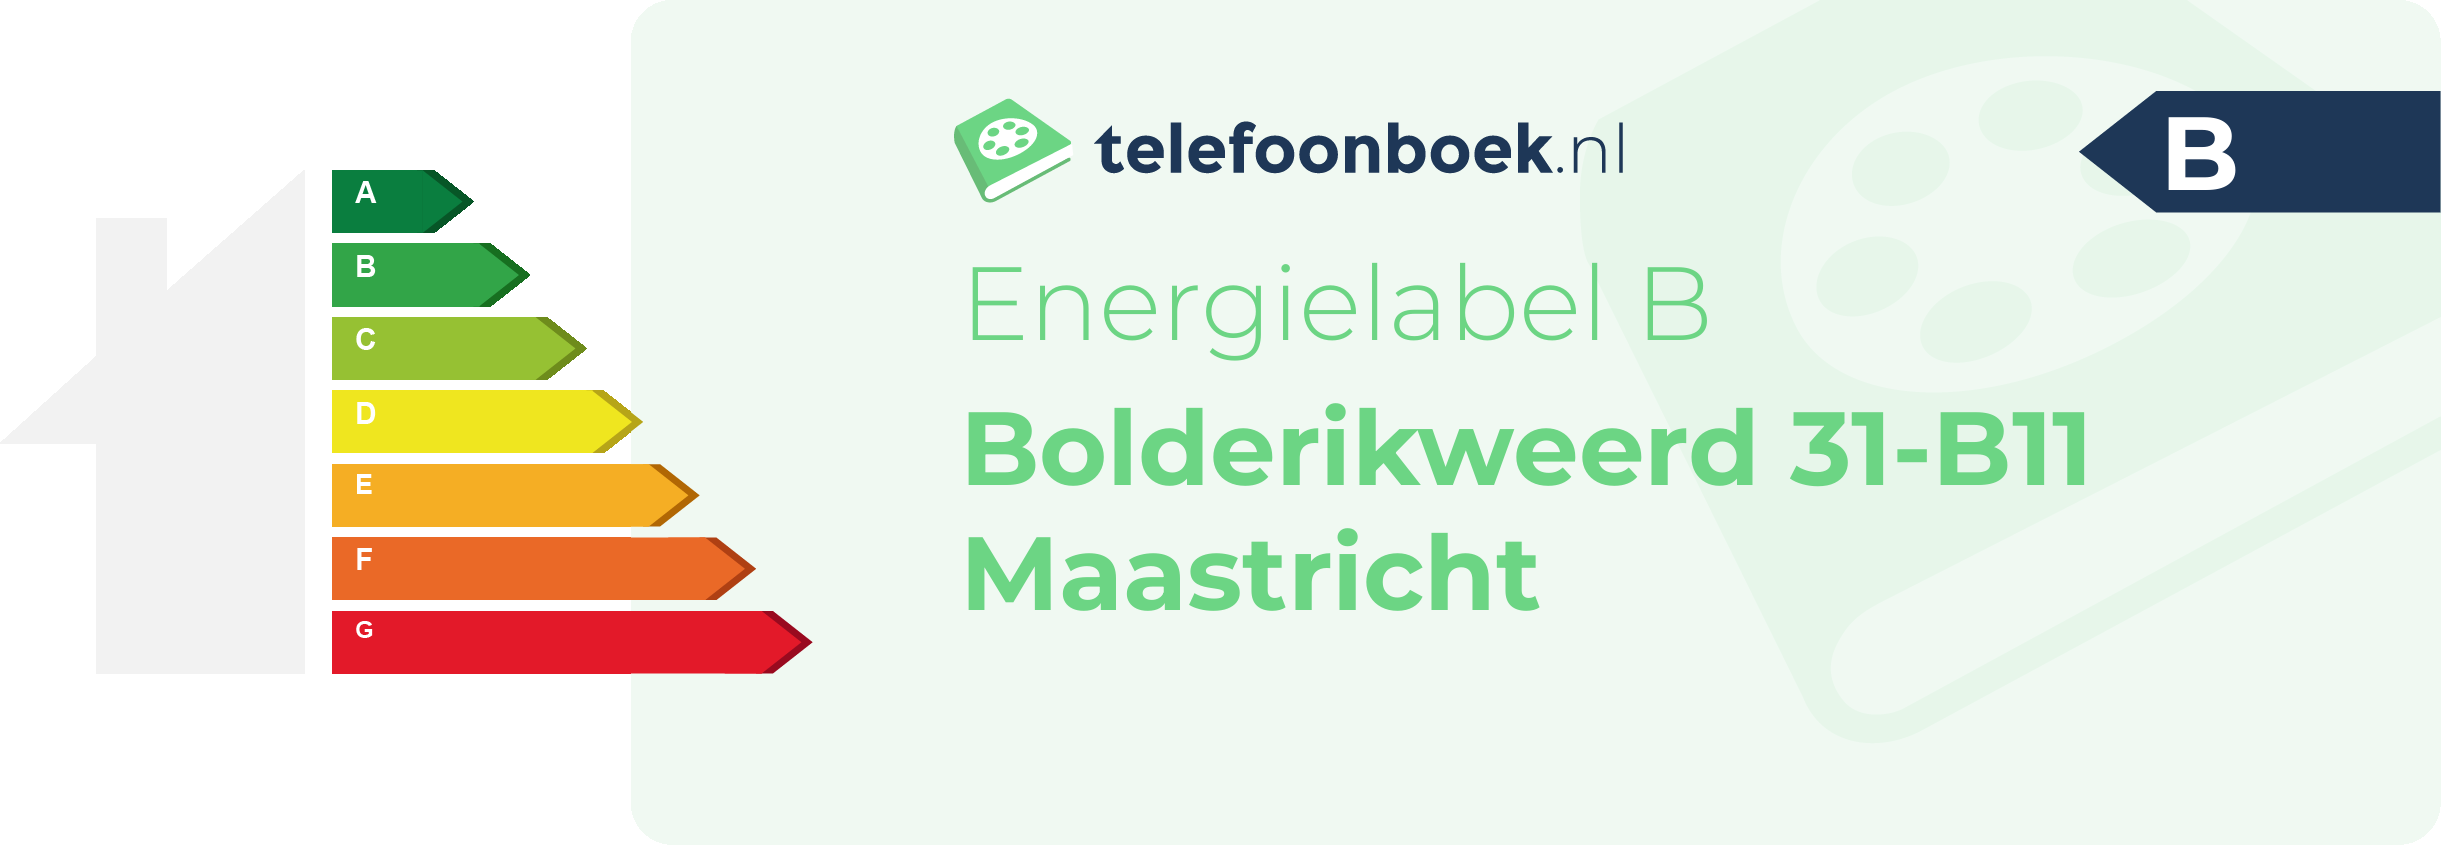 Energielabel Bolderikweerd 31-B11 Maastricht